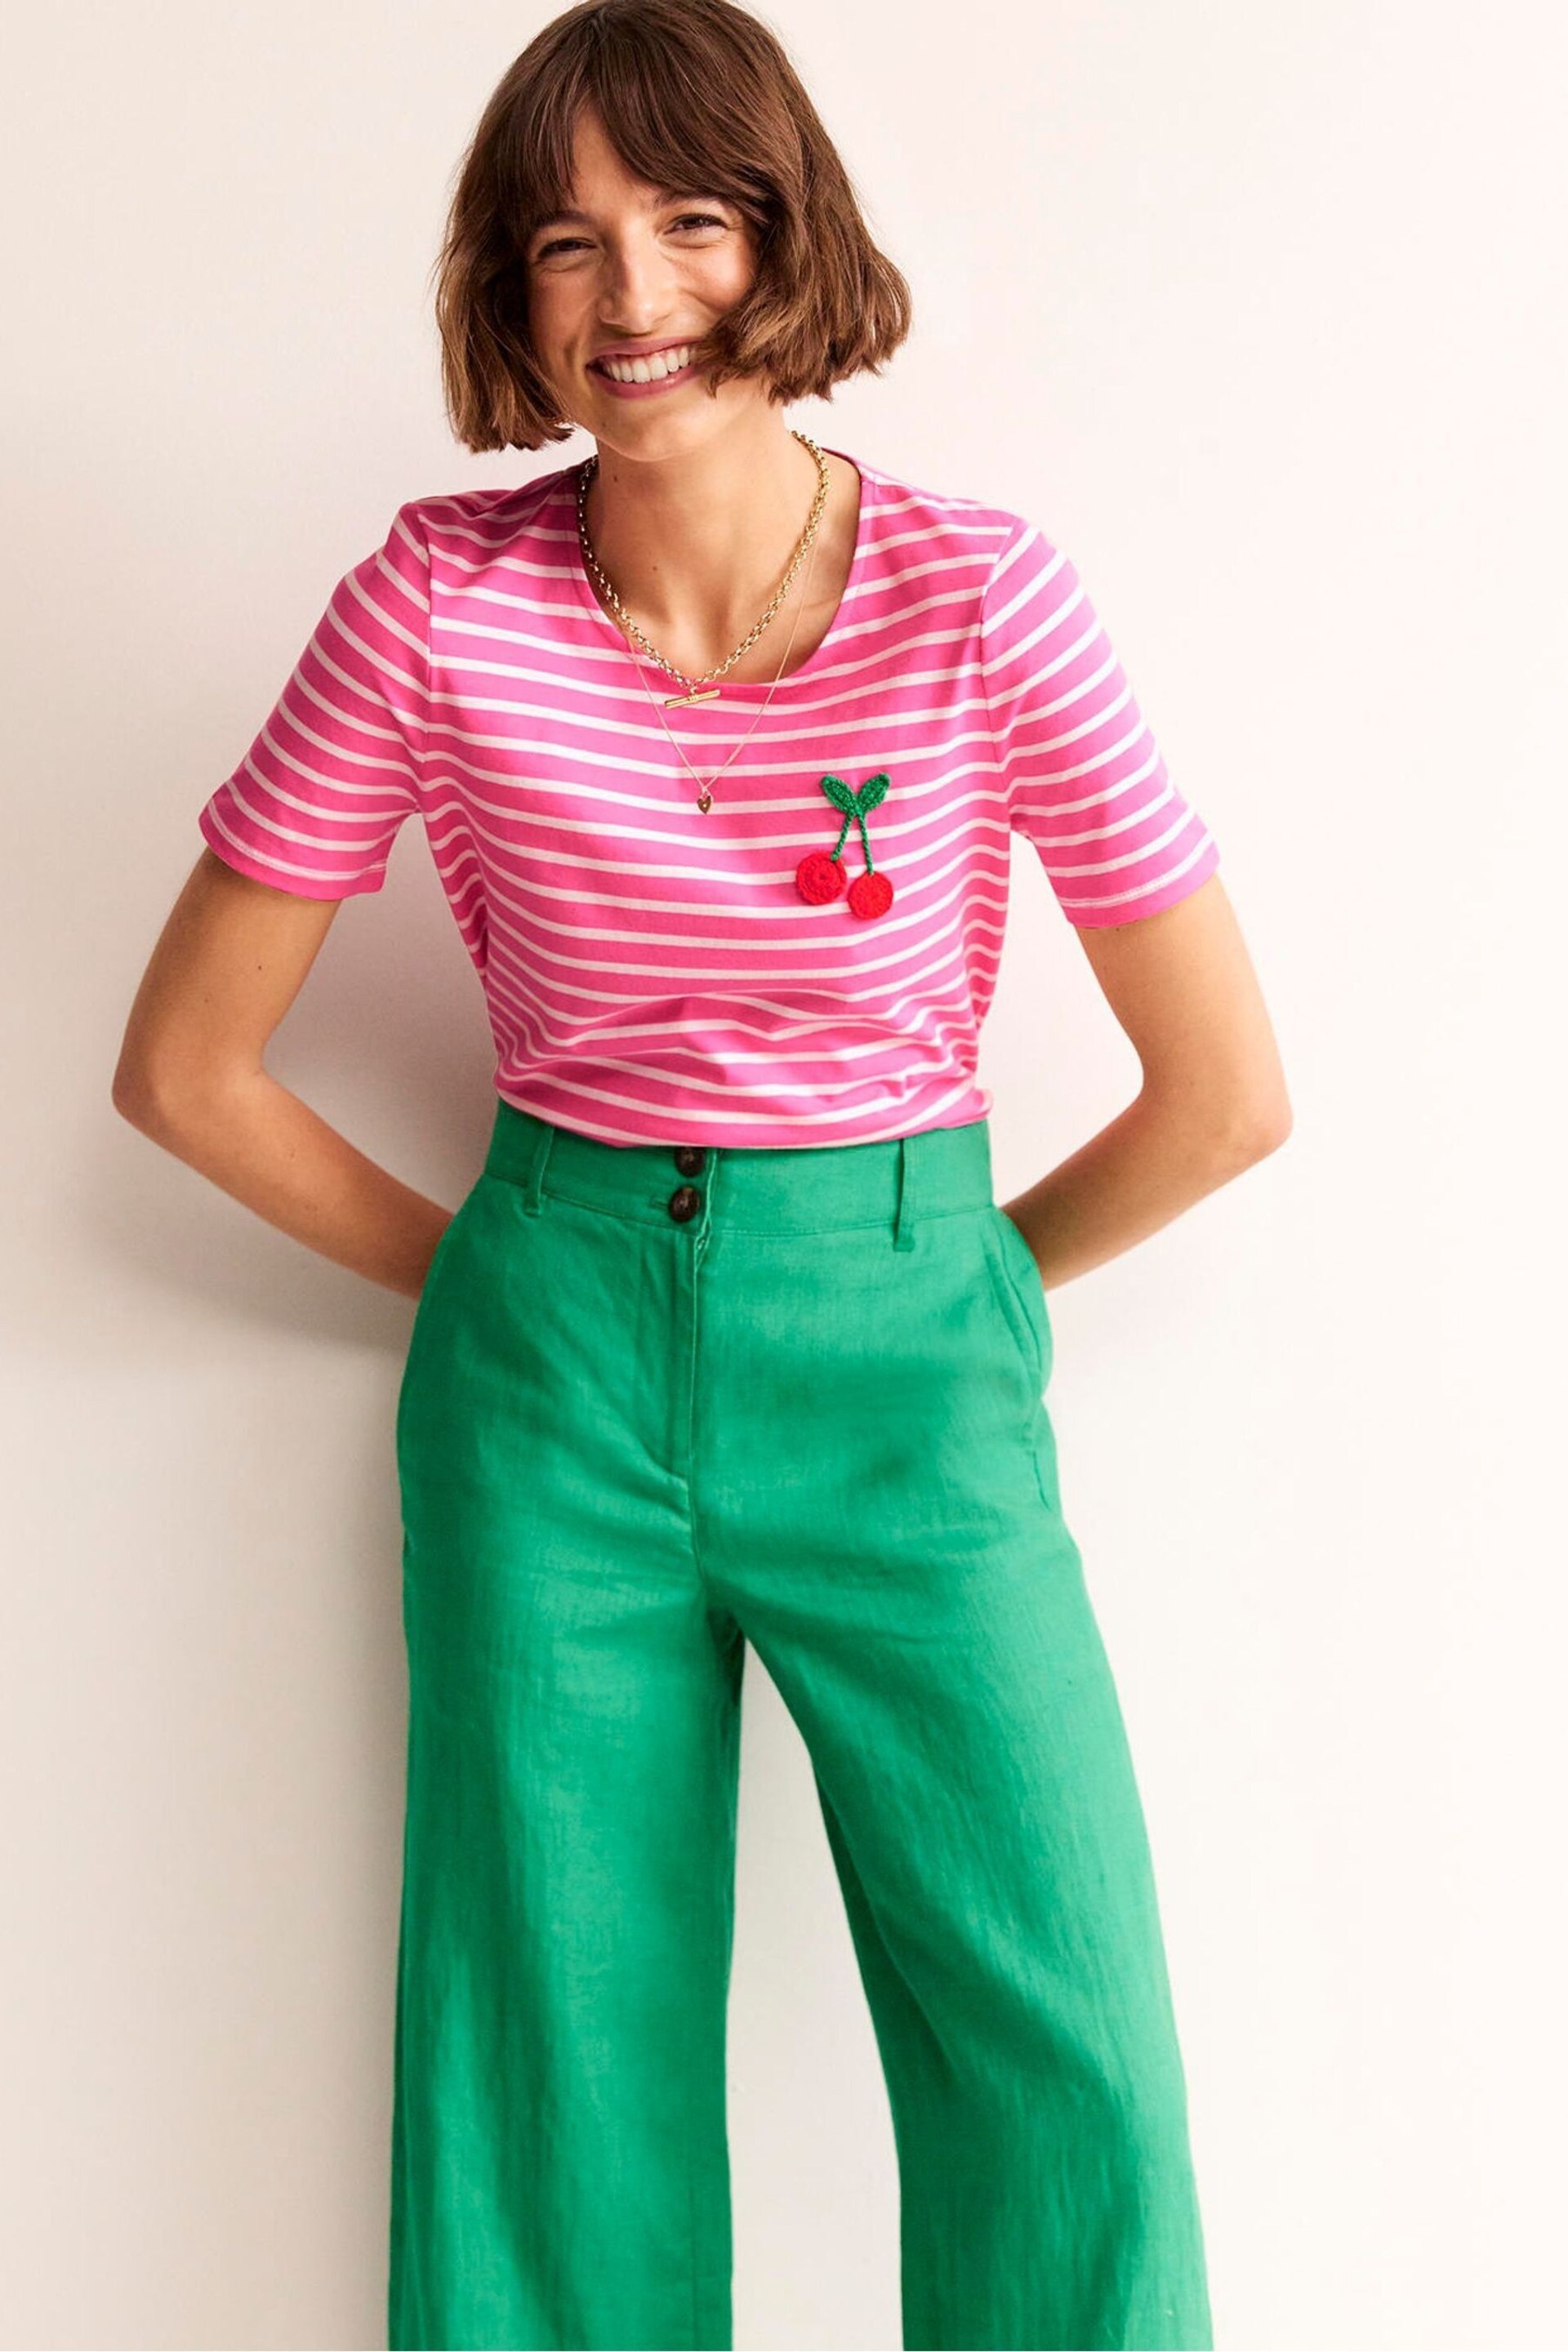 Boden Pink Crochet T-Shirt - Image 1 of 6